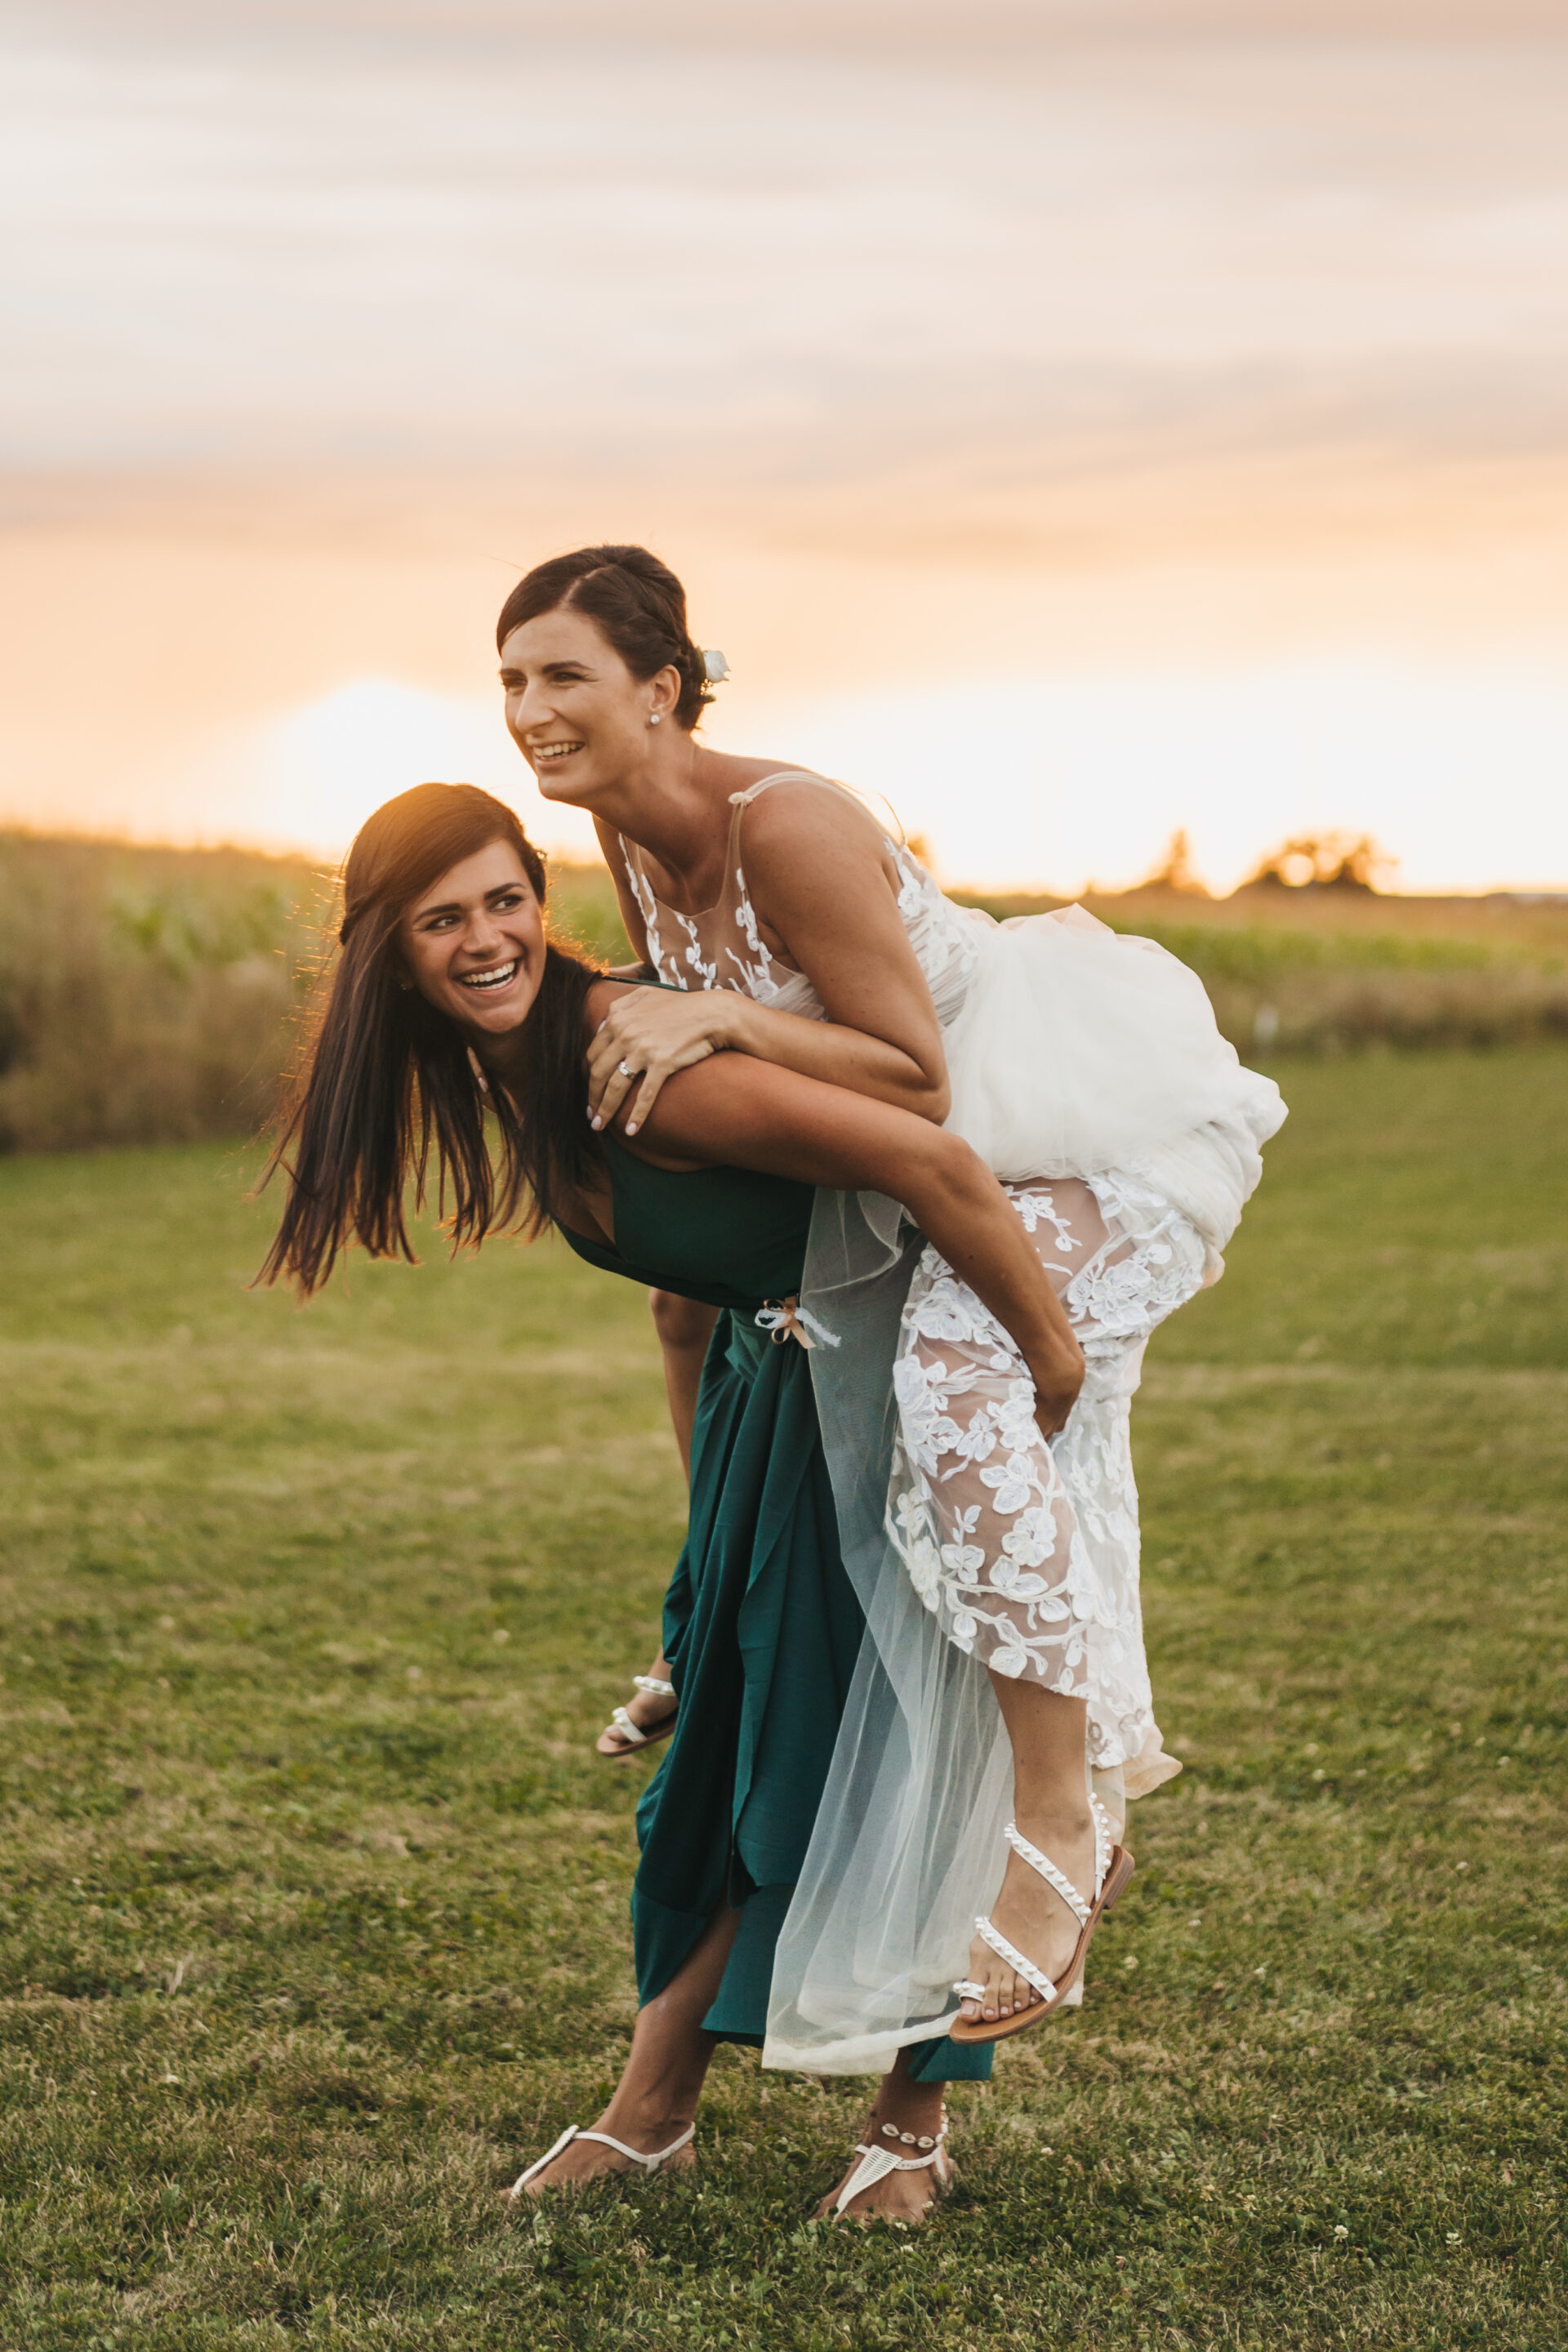 Svatební fotograf - svatební fotografie nevěsta a družička